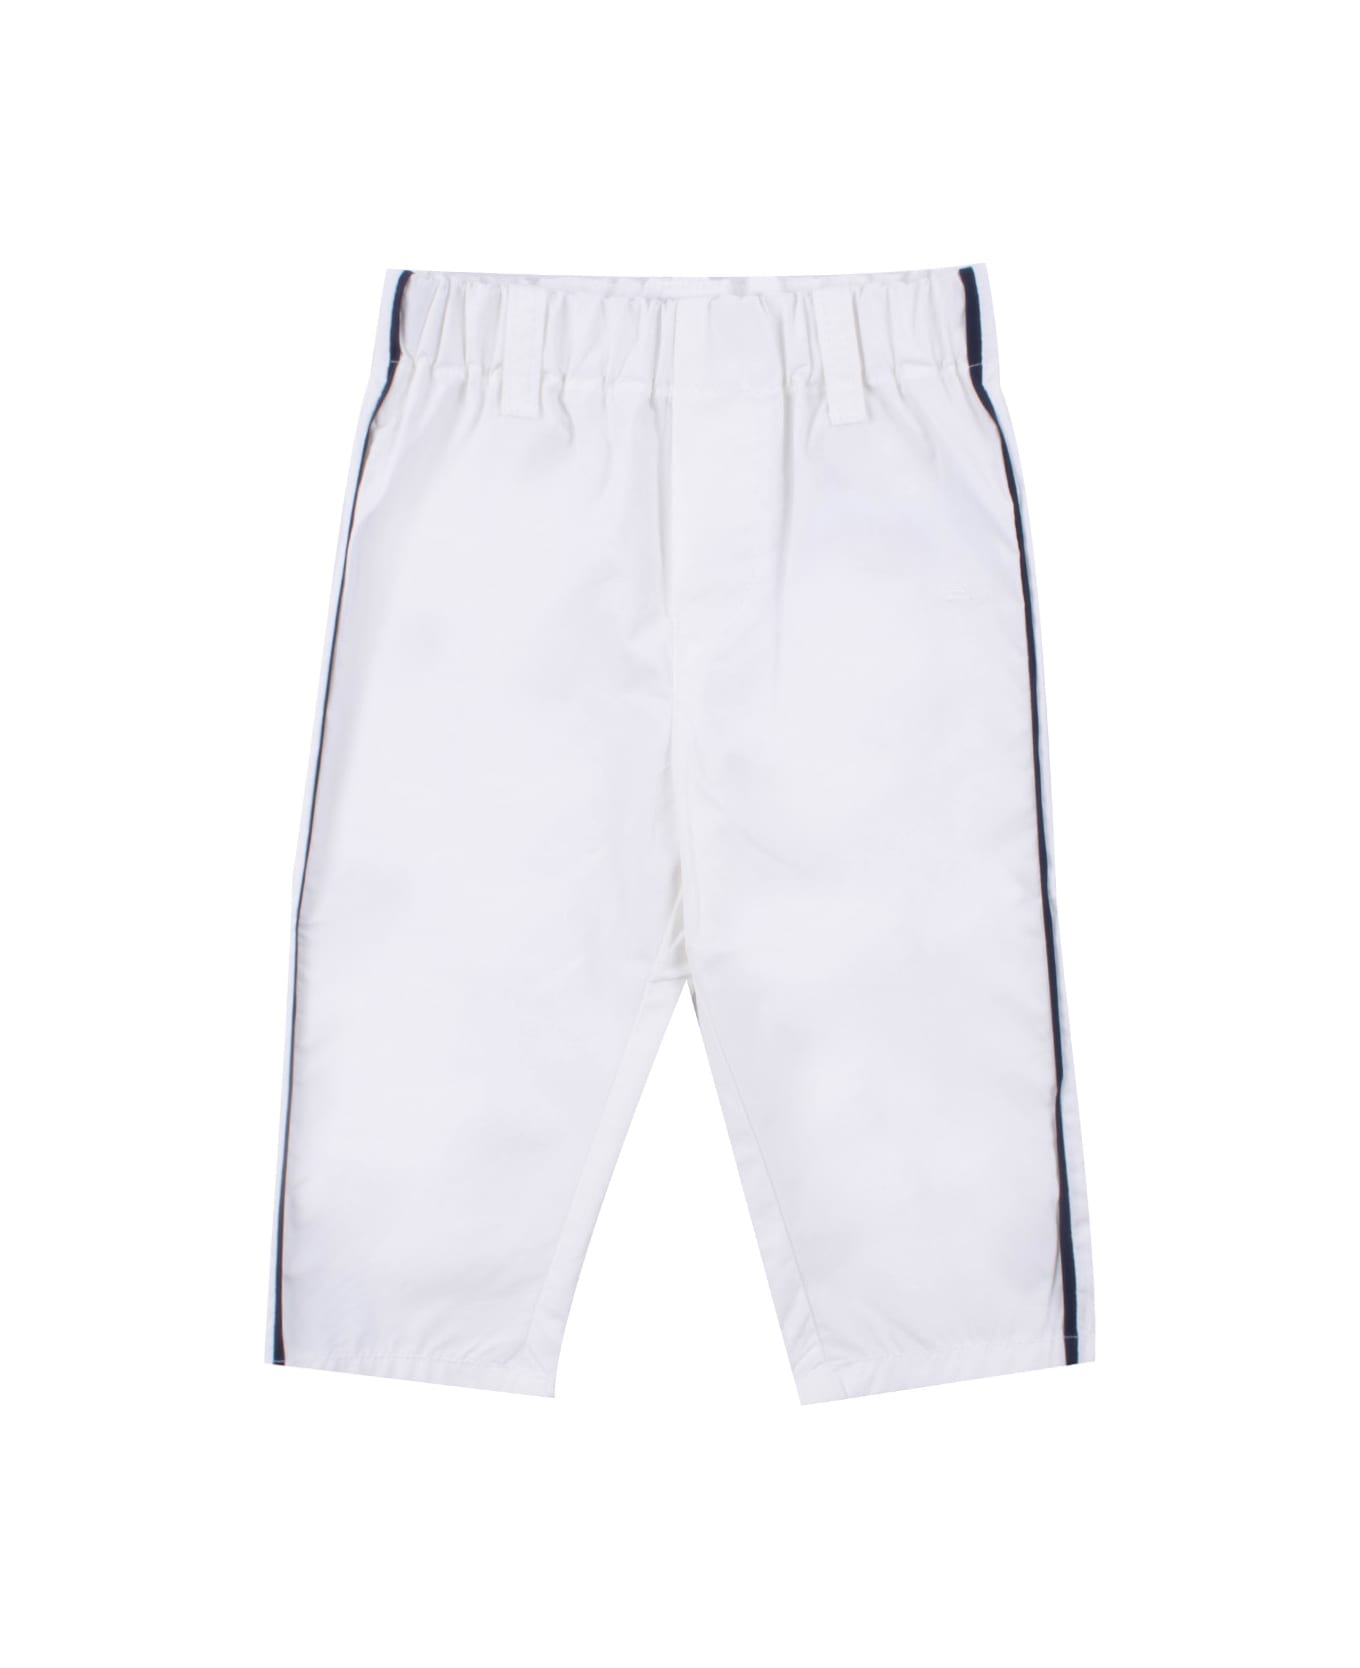 Emporio Armani Cotton Pants - White ボトムス